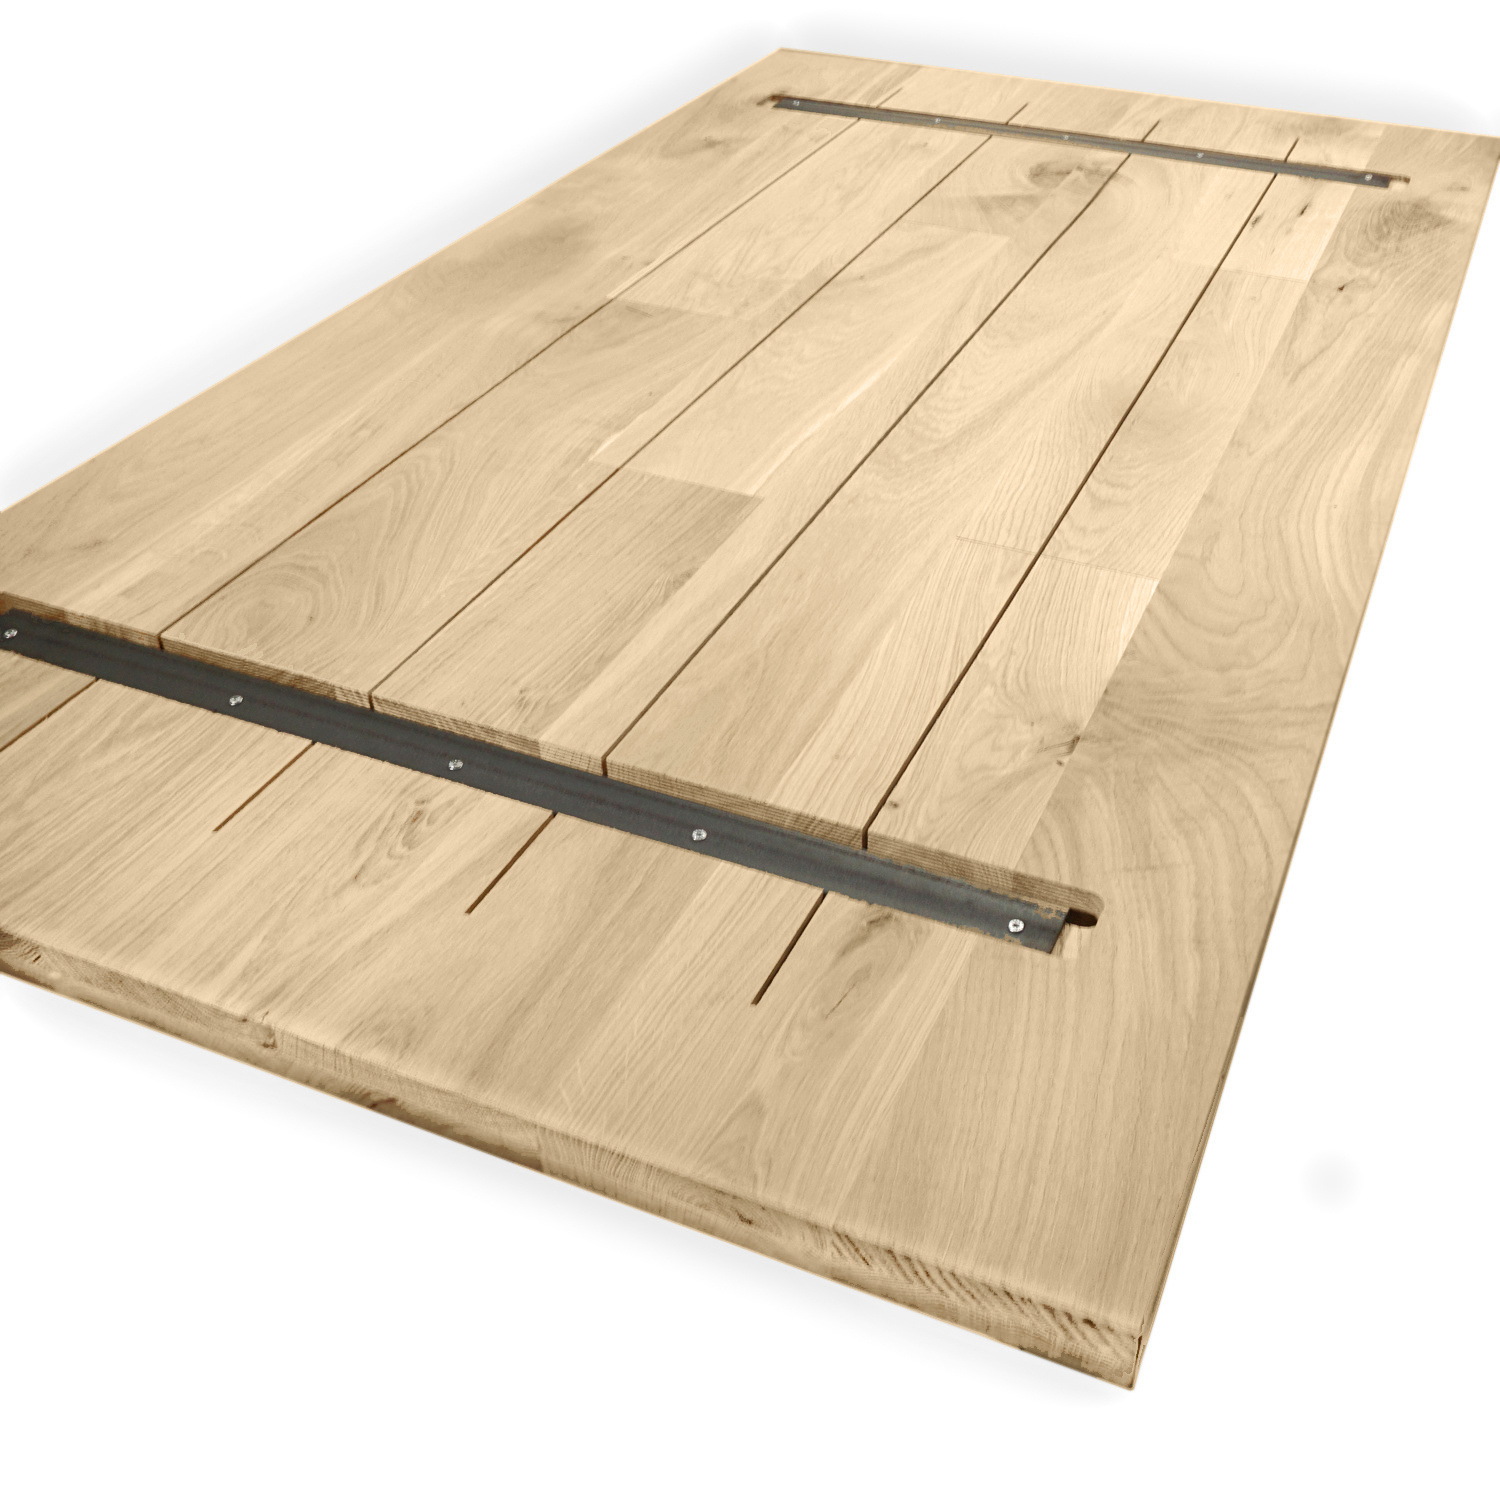  Tischplatte Eiche nach Maß - 4 cm dick - Eichenholz rustikal - Eiche Tischplatte massiv - verleimt & künstlich getrocknet (HF 8-12%) - 50-120x50-350 cm